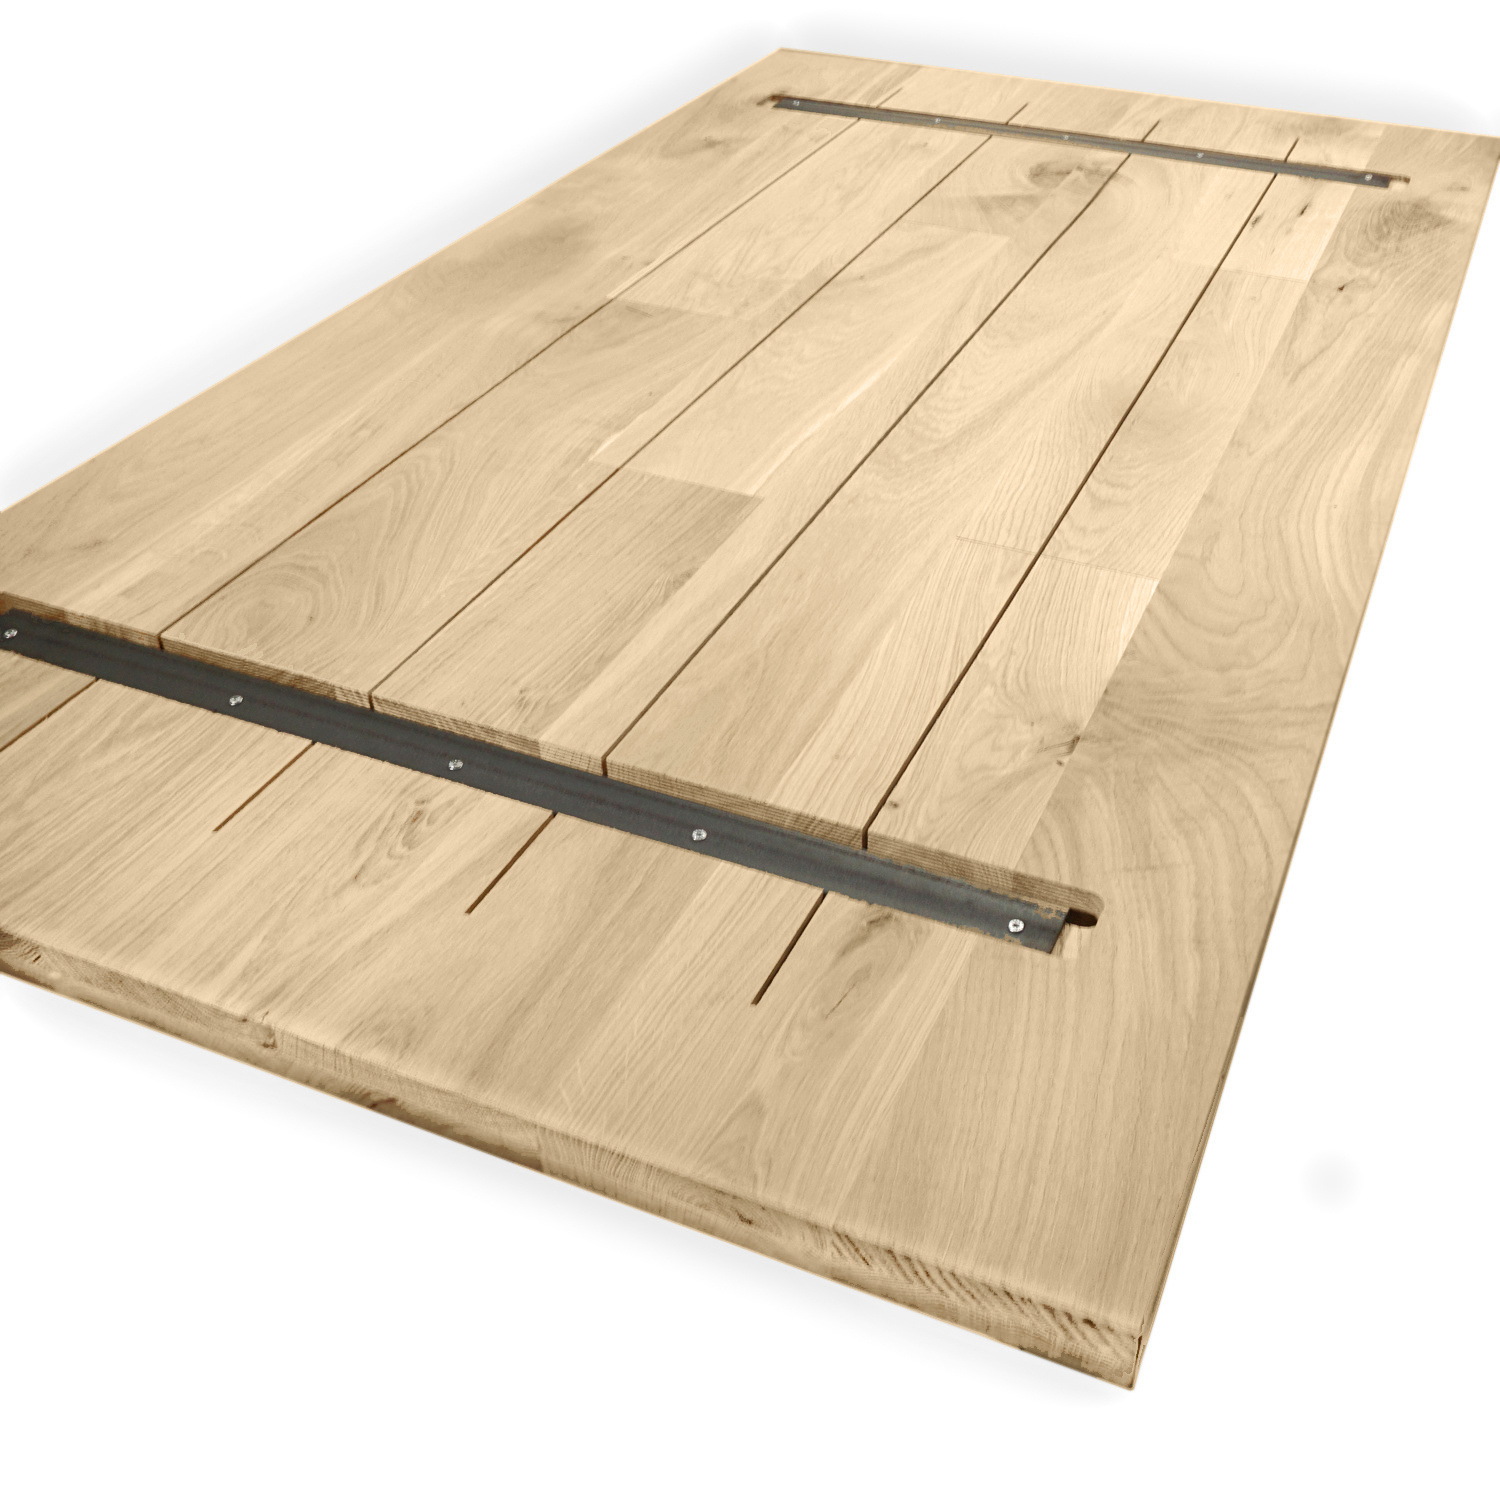  Tischplatte Eiche nach Maß - 4 cm dick - Eichenholz rustikal - Eiche Tischplatte massiv - verleimt & künstlich getrocknet (HF 8-12%) - 50-120x50-350 cm